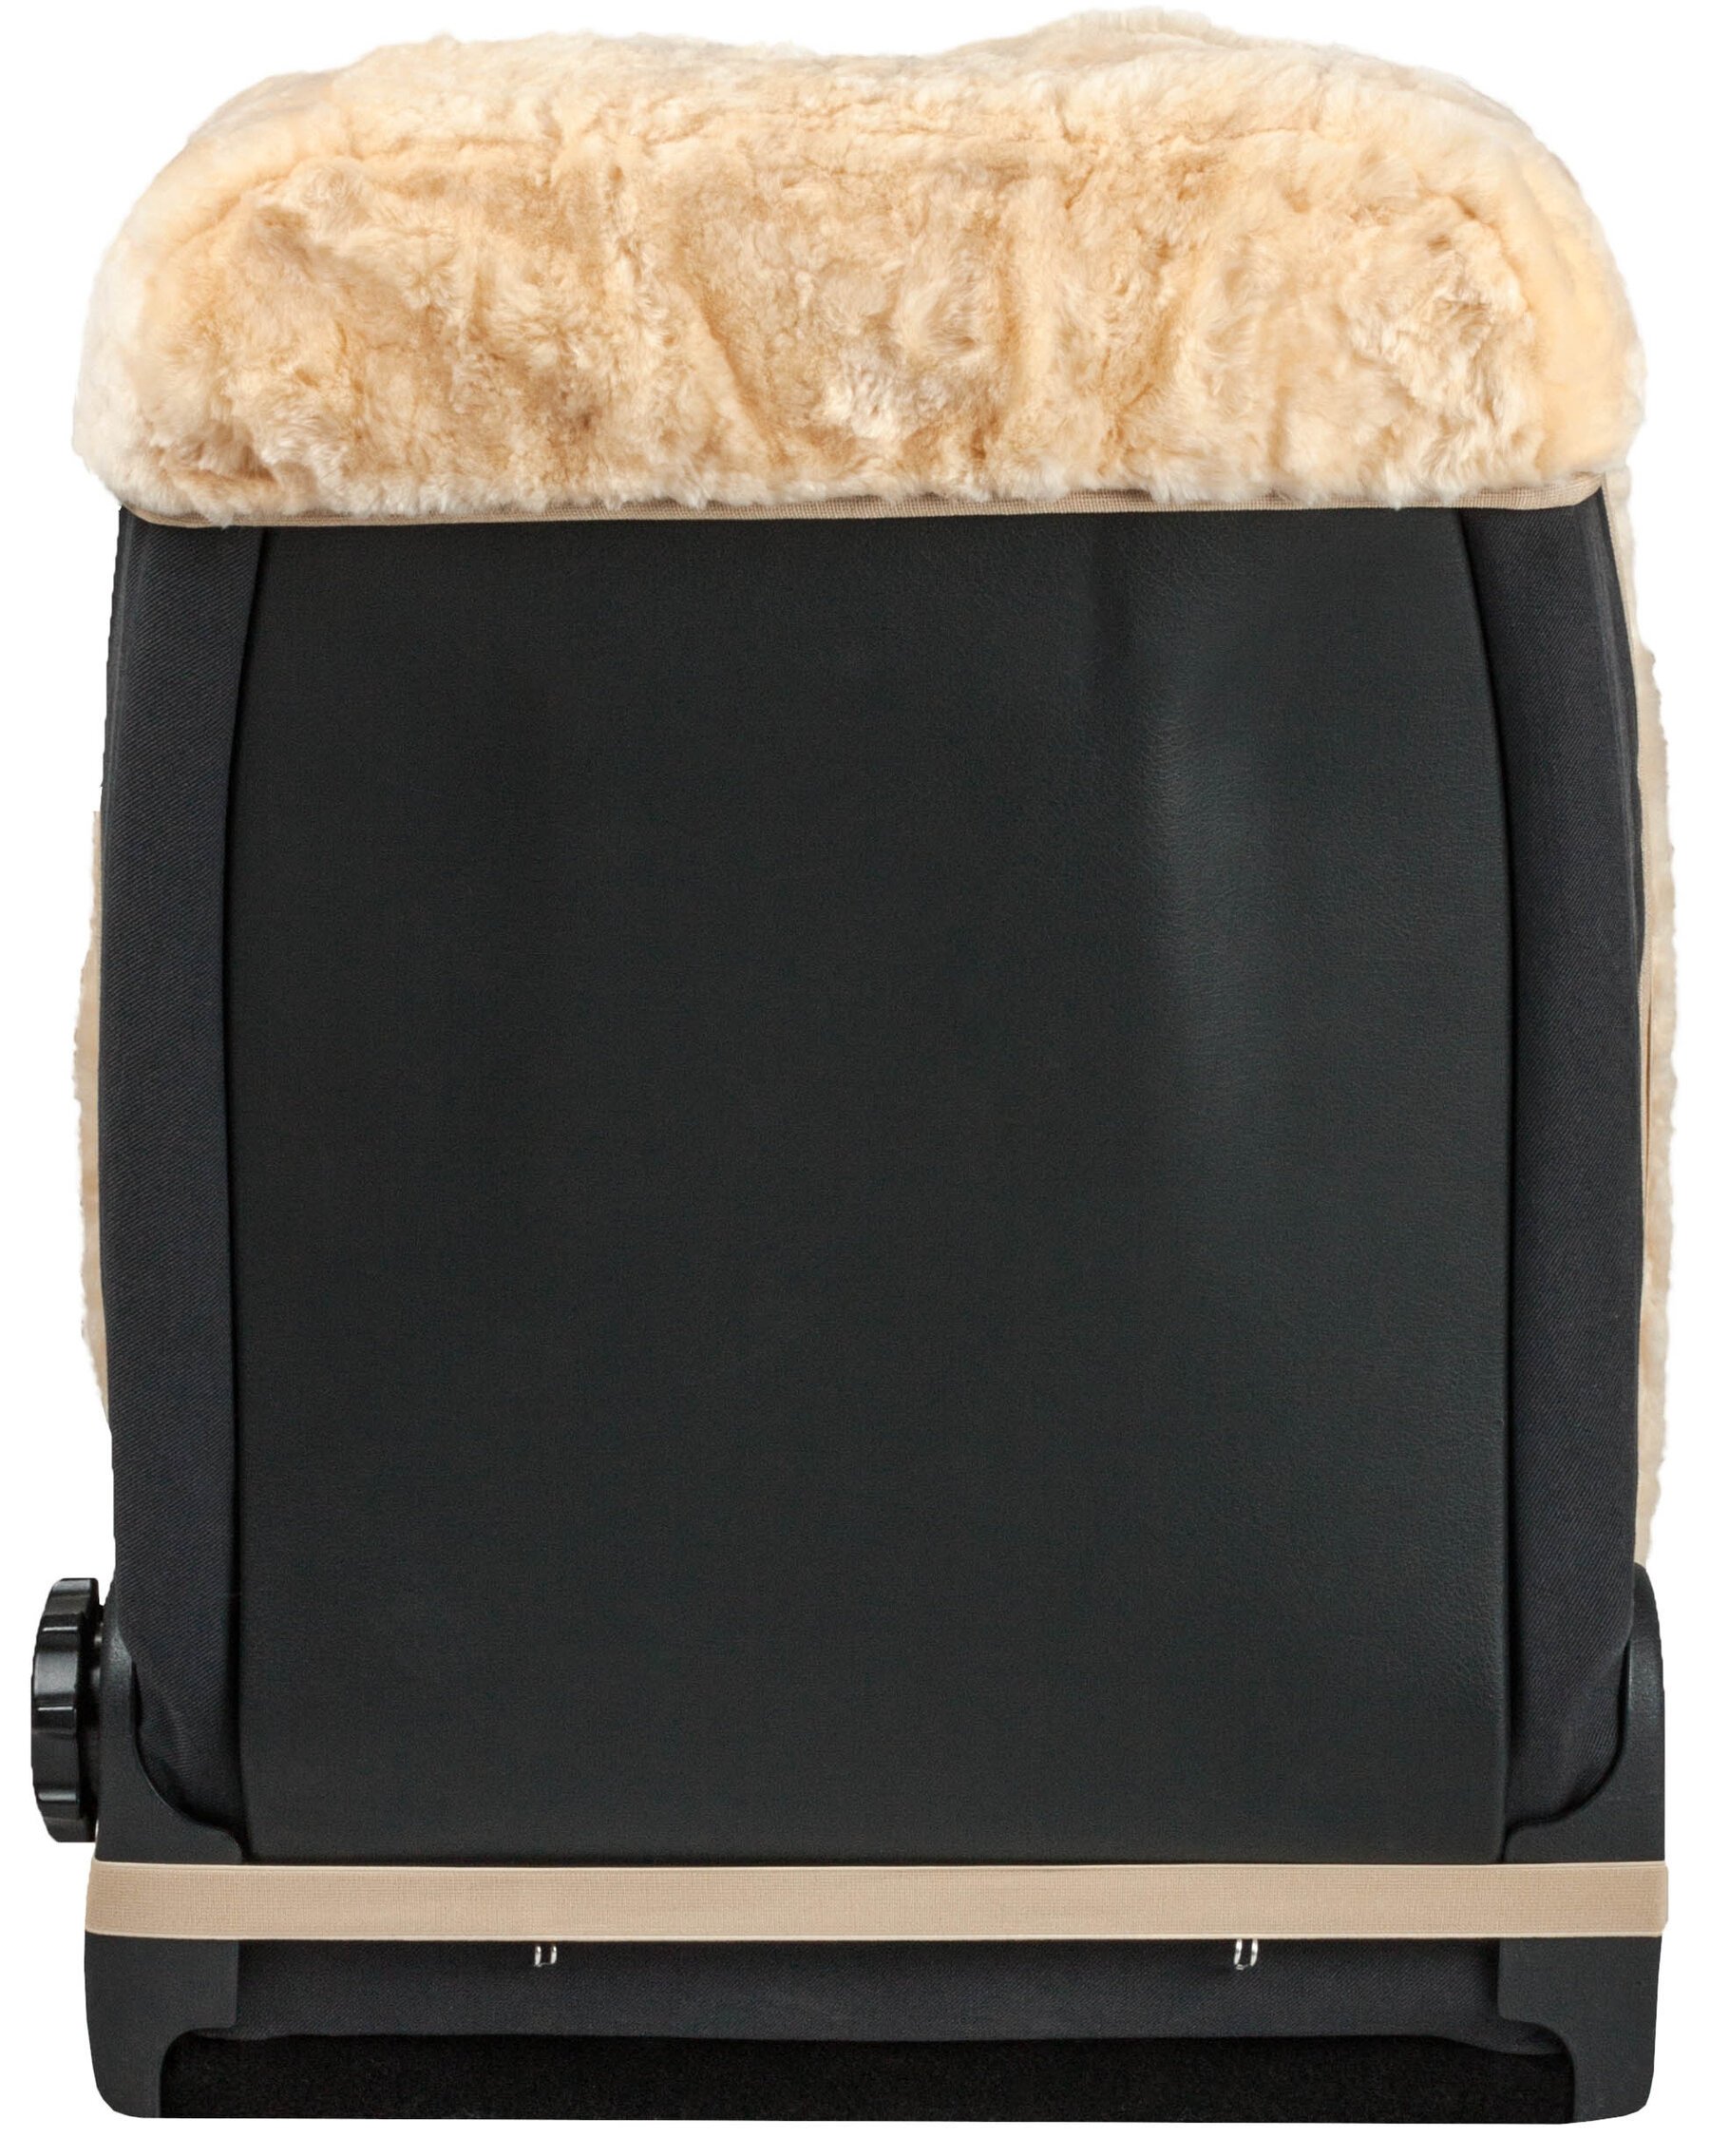 Coprisedili per auto Shauna in pelliccia di agnello con pelo da 20 mm di spessore - 2 pezzi beige con sistema ZIPP IT